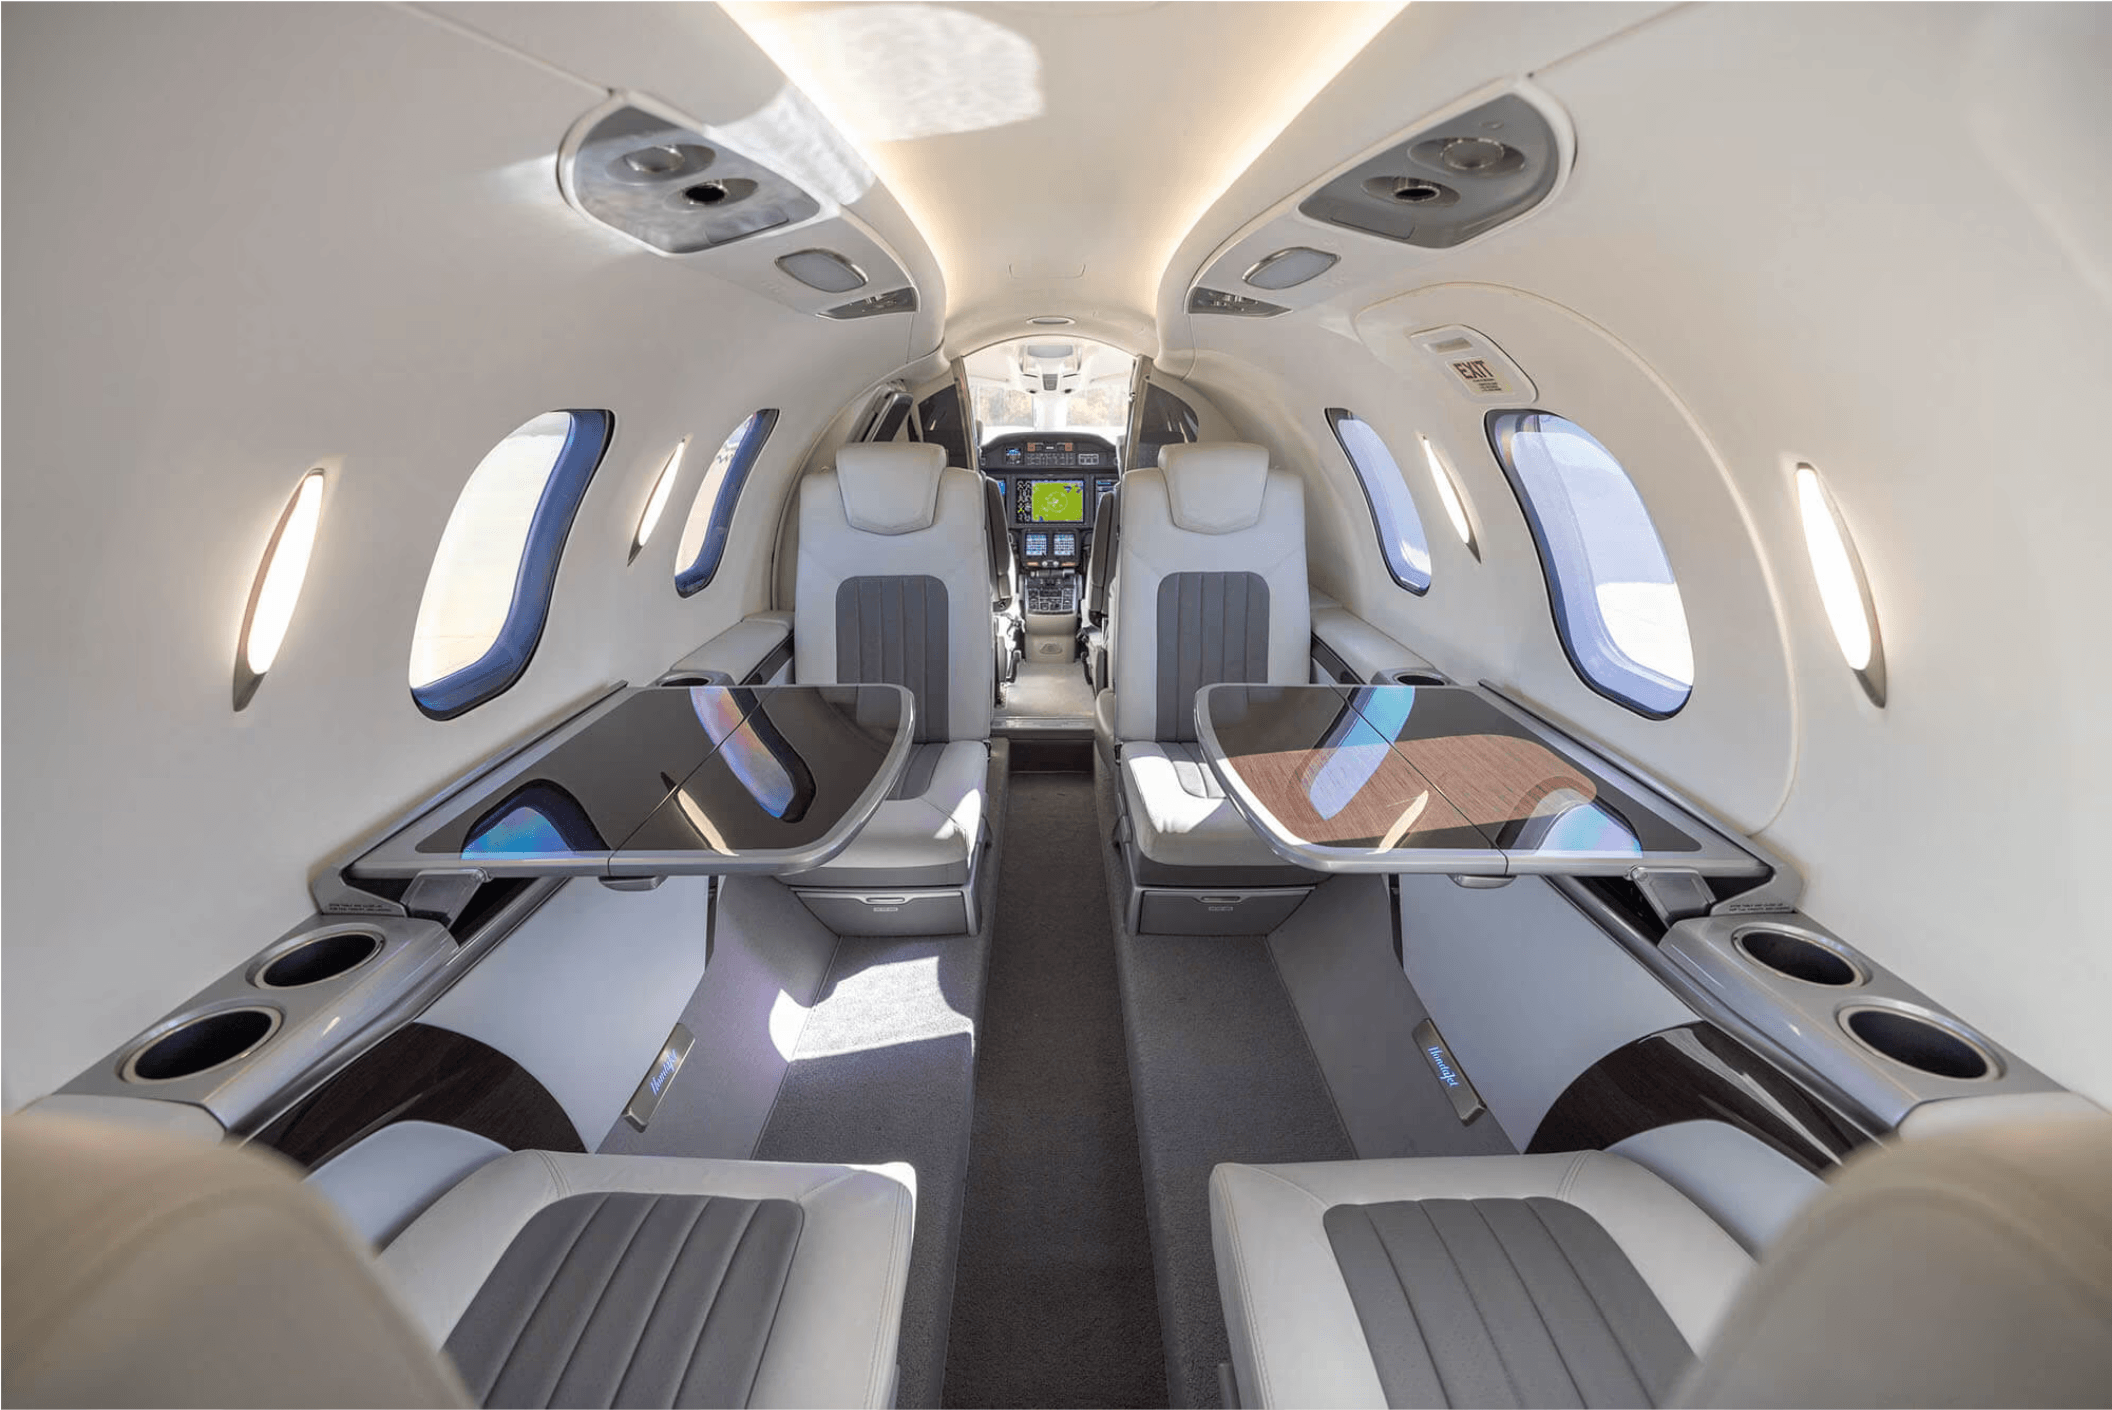 small private jet interior